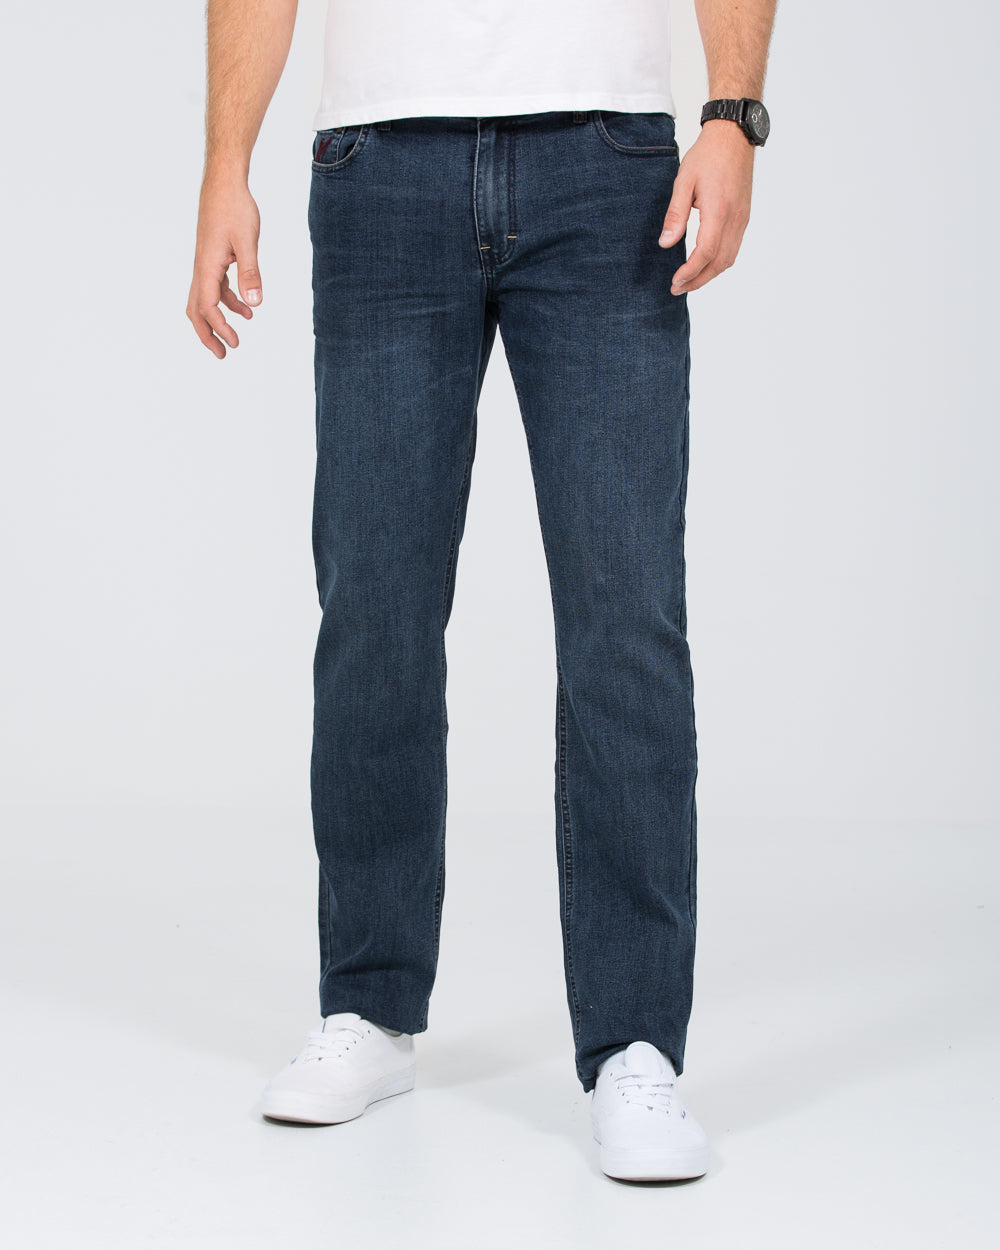 Mish Mash Outlander Tall Jeans (blue/black)